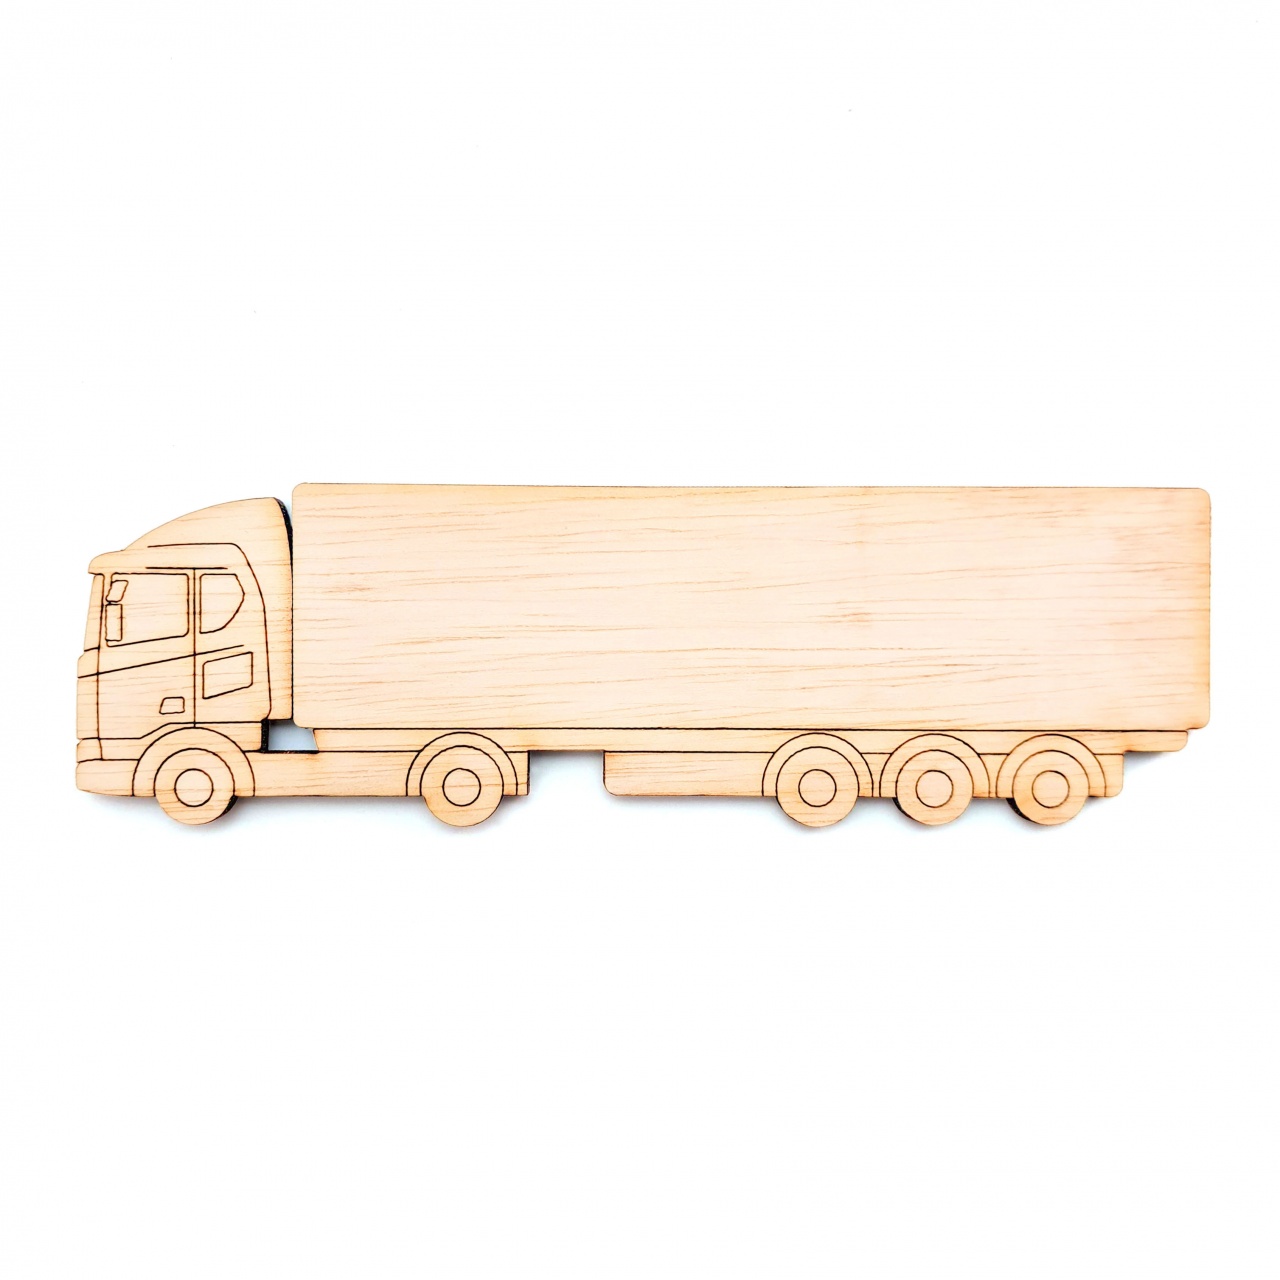 Camion TIR, 30×9,2 cm, placaj lemn